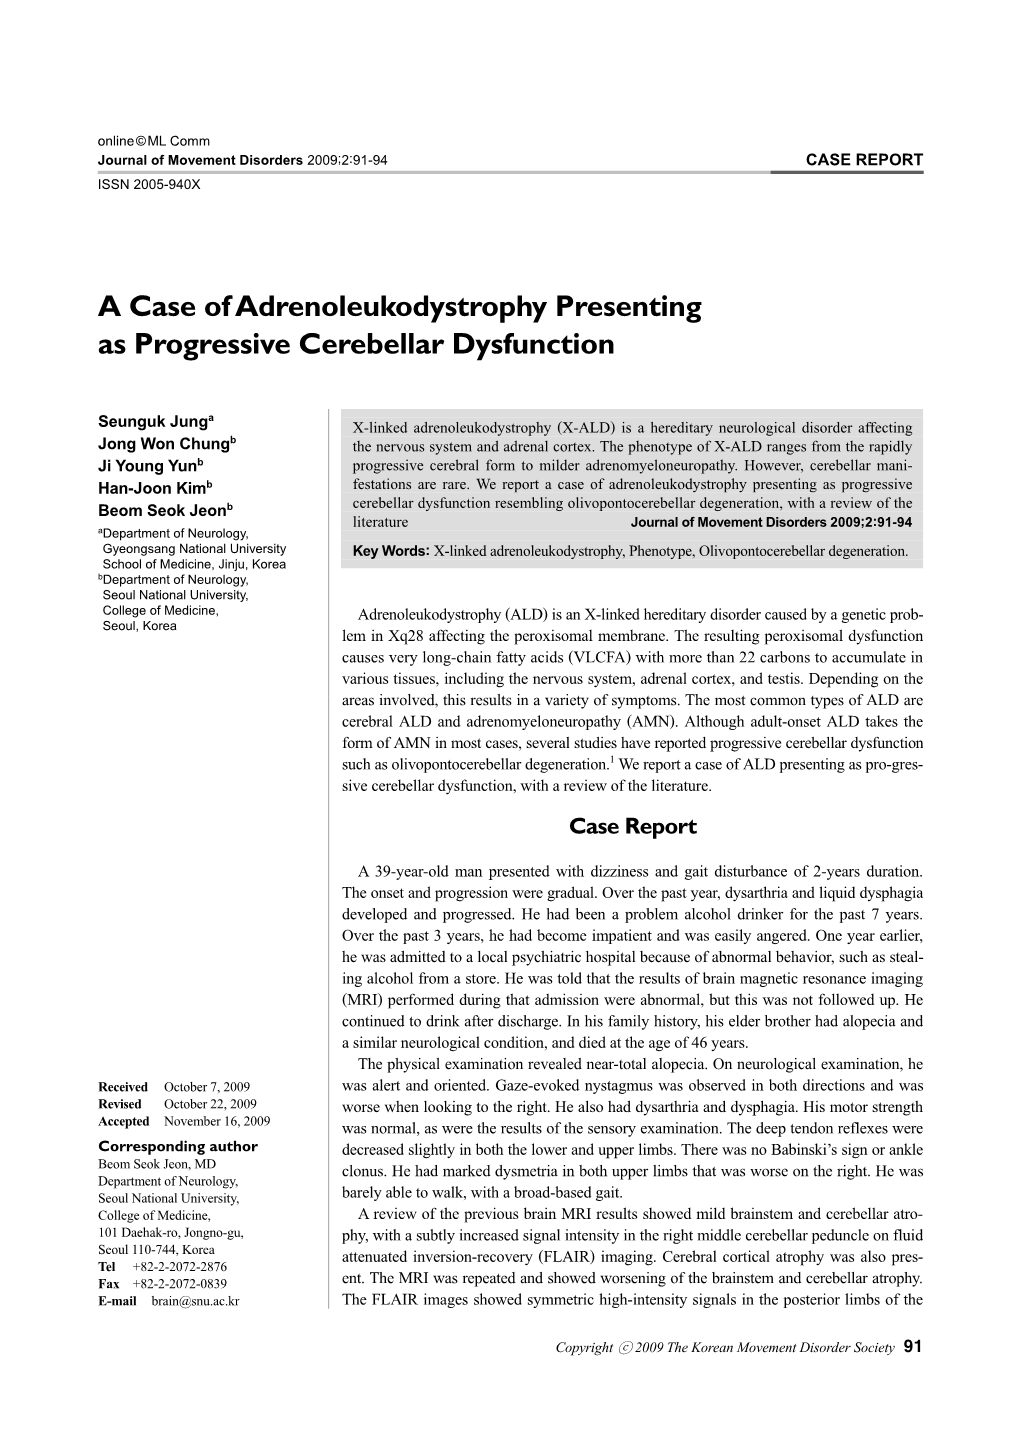 A Case of Adrenoleukodystrophy Presenting As Progressive Cerebellar Dysfunction